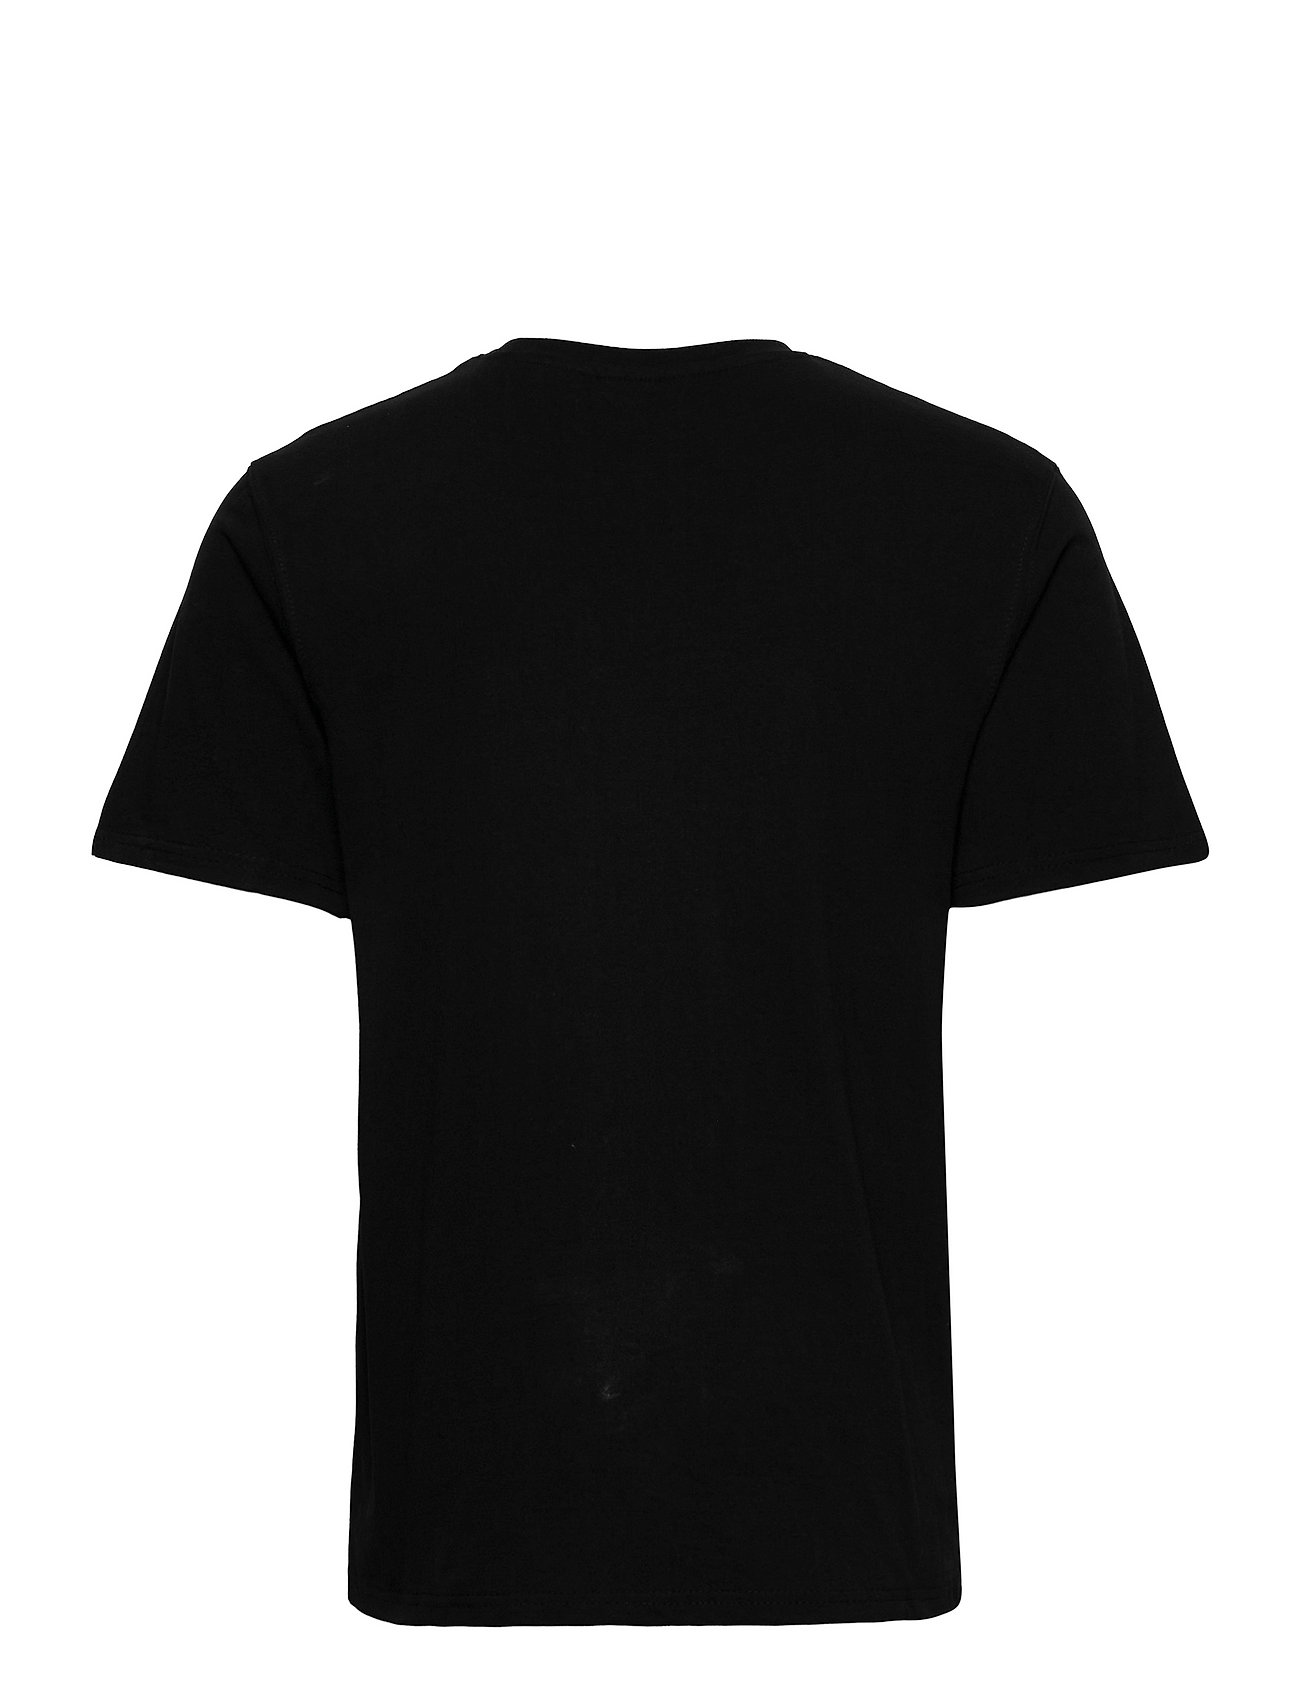 Casual Tee Sleeve T-shirt Sort HAN kortærmede t-shirts fra HAN Kjøbenhavn til herre Sort - Pashion.dk